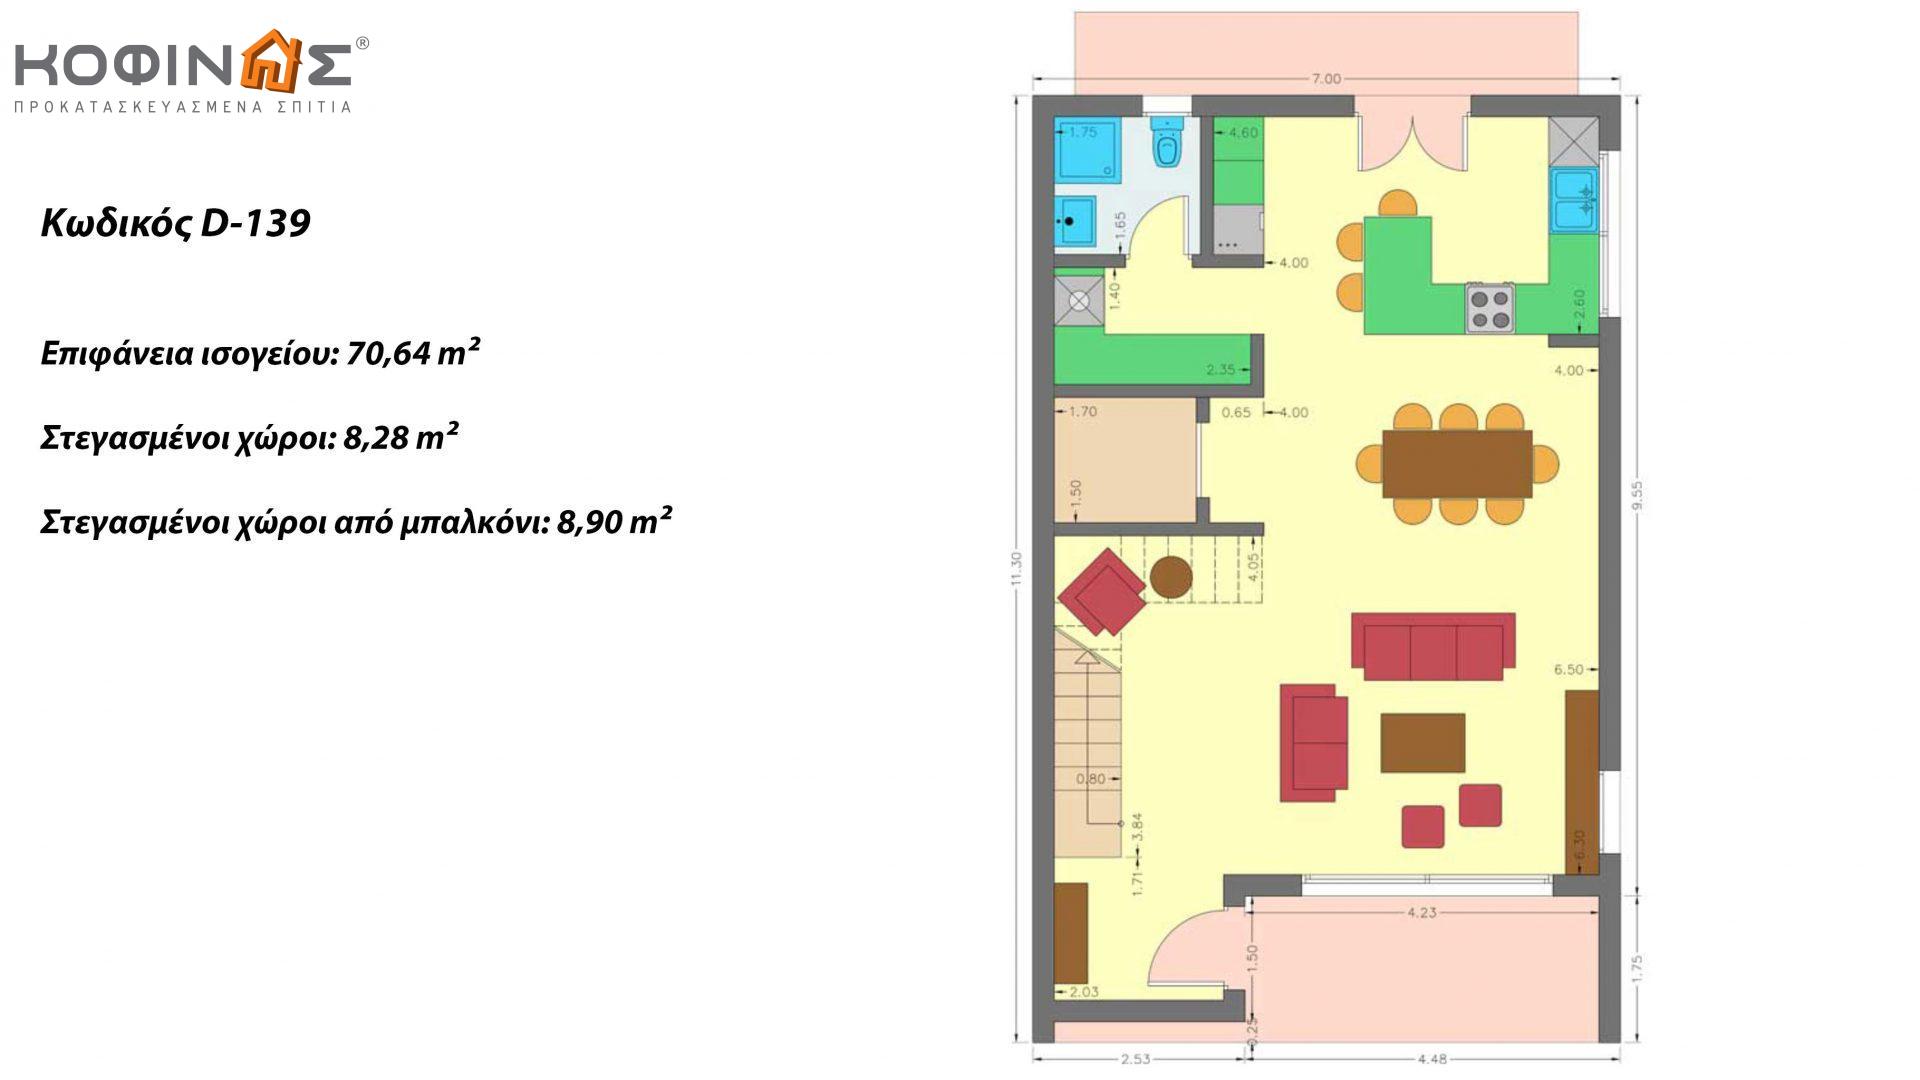 Διώροφη Κατοικία D-139, συνολικής επιφάνειας 139,00 τ.μ., συνολική επιφάνεια στεγασμένων χώρων 19.88 τ.μ., μπαλκόνια 14.27 τ.μ.